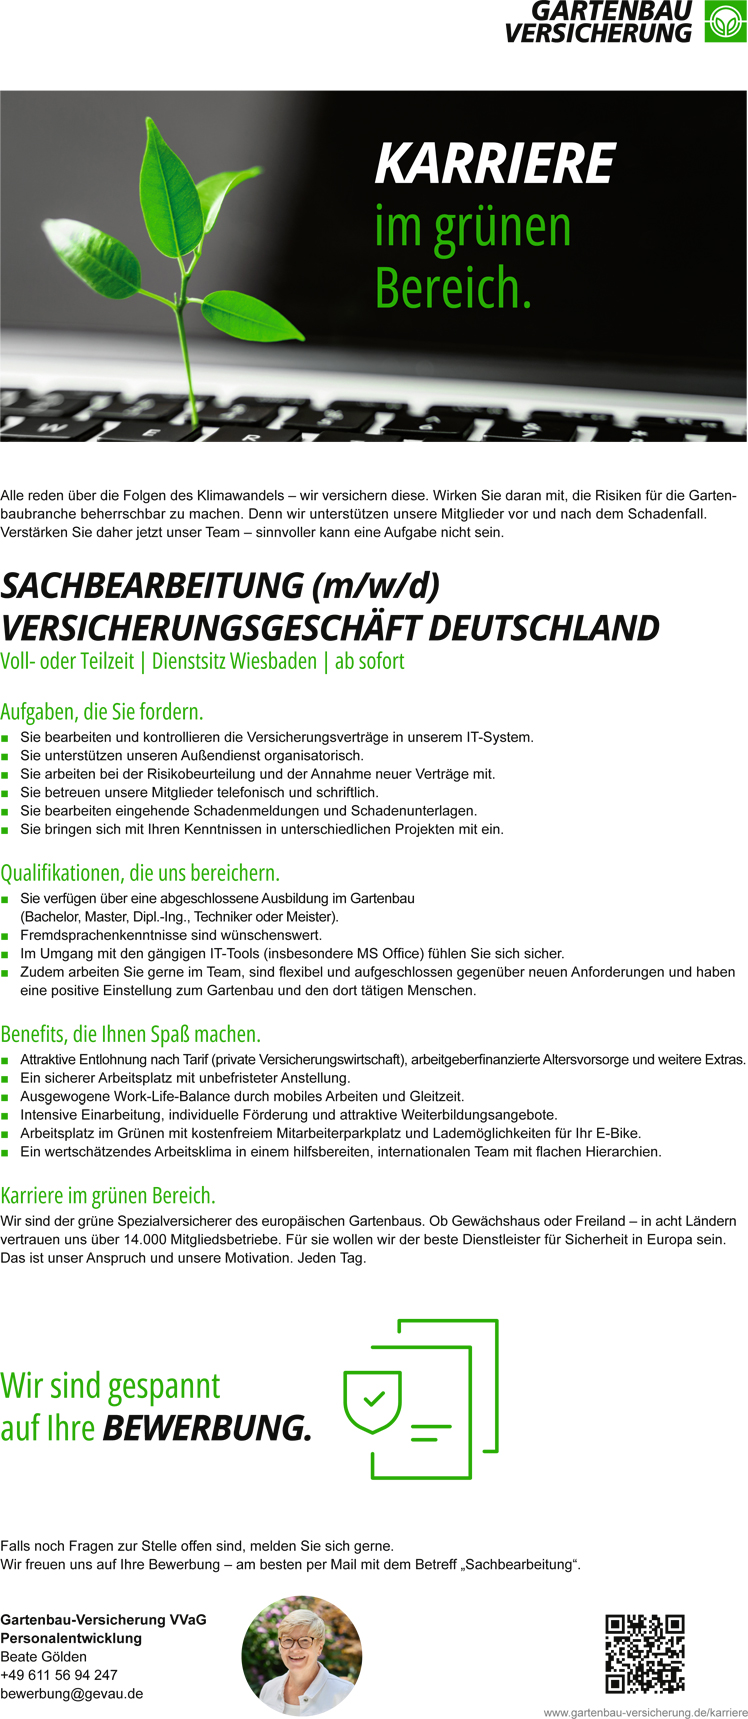 Gartenbau-Versicherung - Sachbearbeitung (m/w/d) Versicherungsgeschäft Deutschland in Wiesbaden